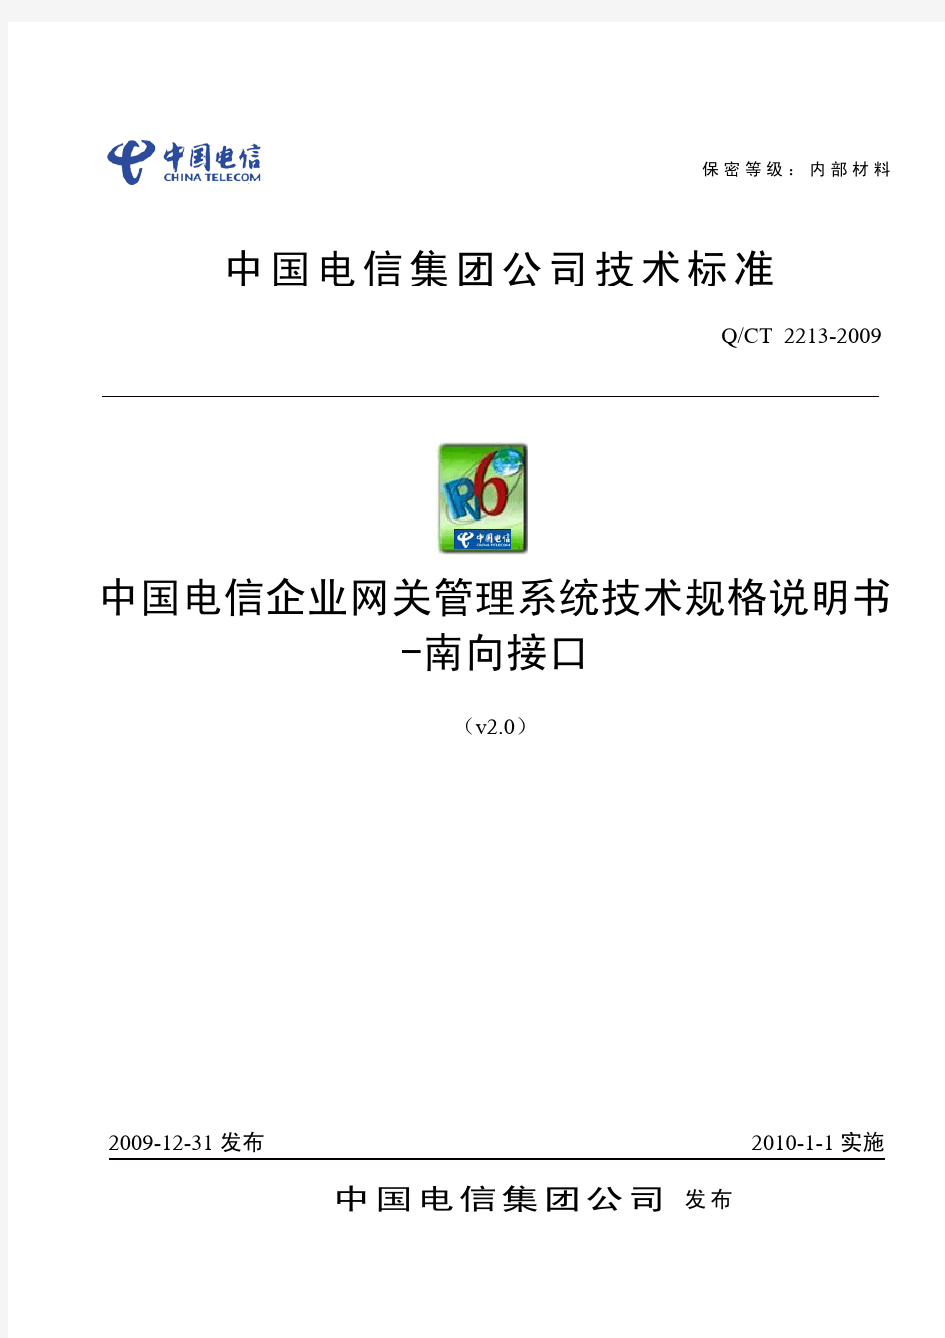 中国电信企业网关管理系统技术规格说明书V2.0-南向接口